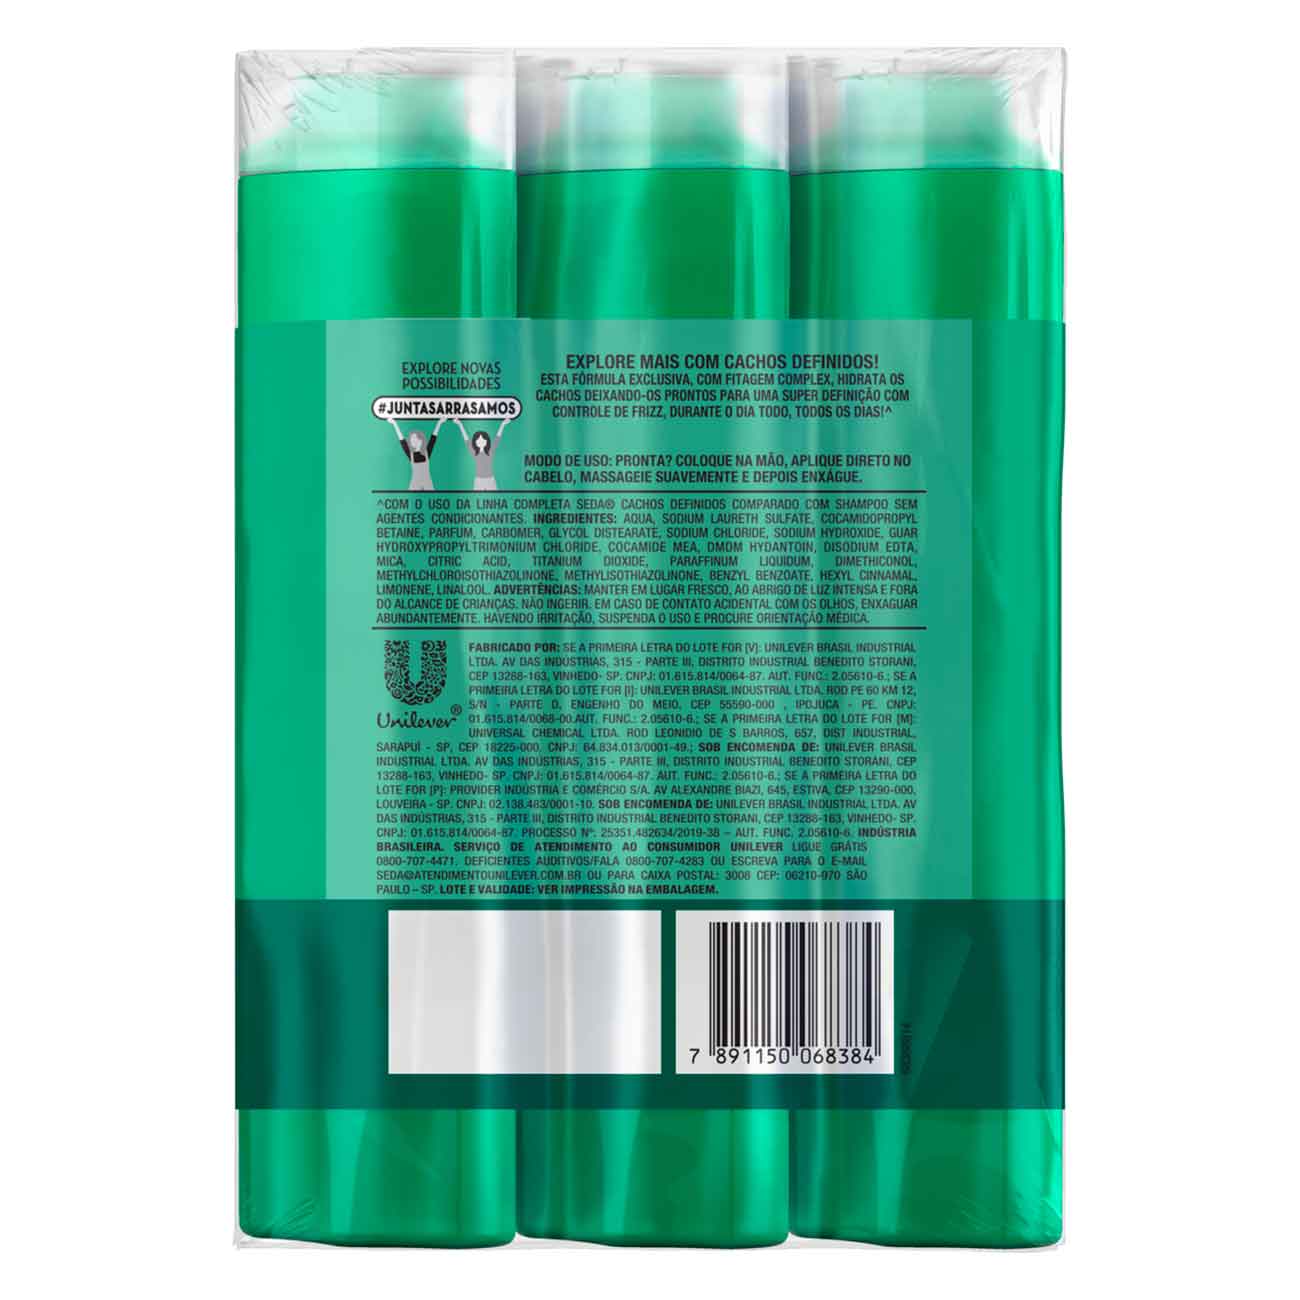 Shampoo Seda Cocriaes Cachos Definidos | Pack 3 unidades 325mL